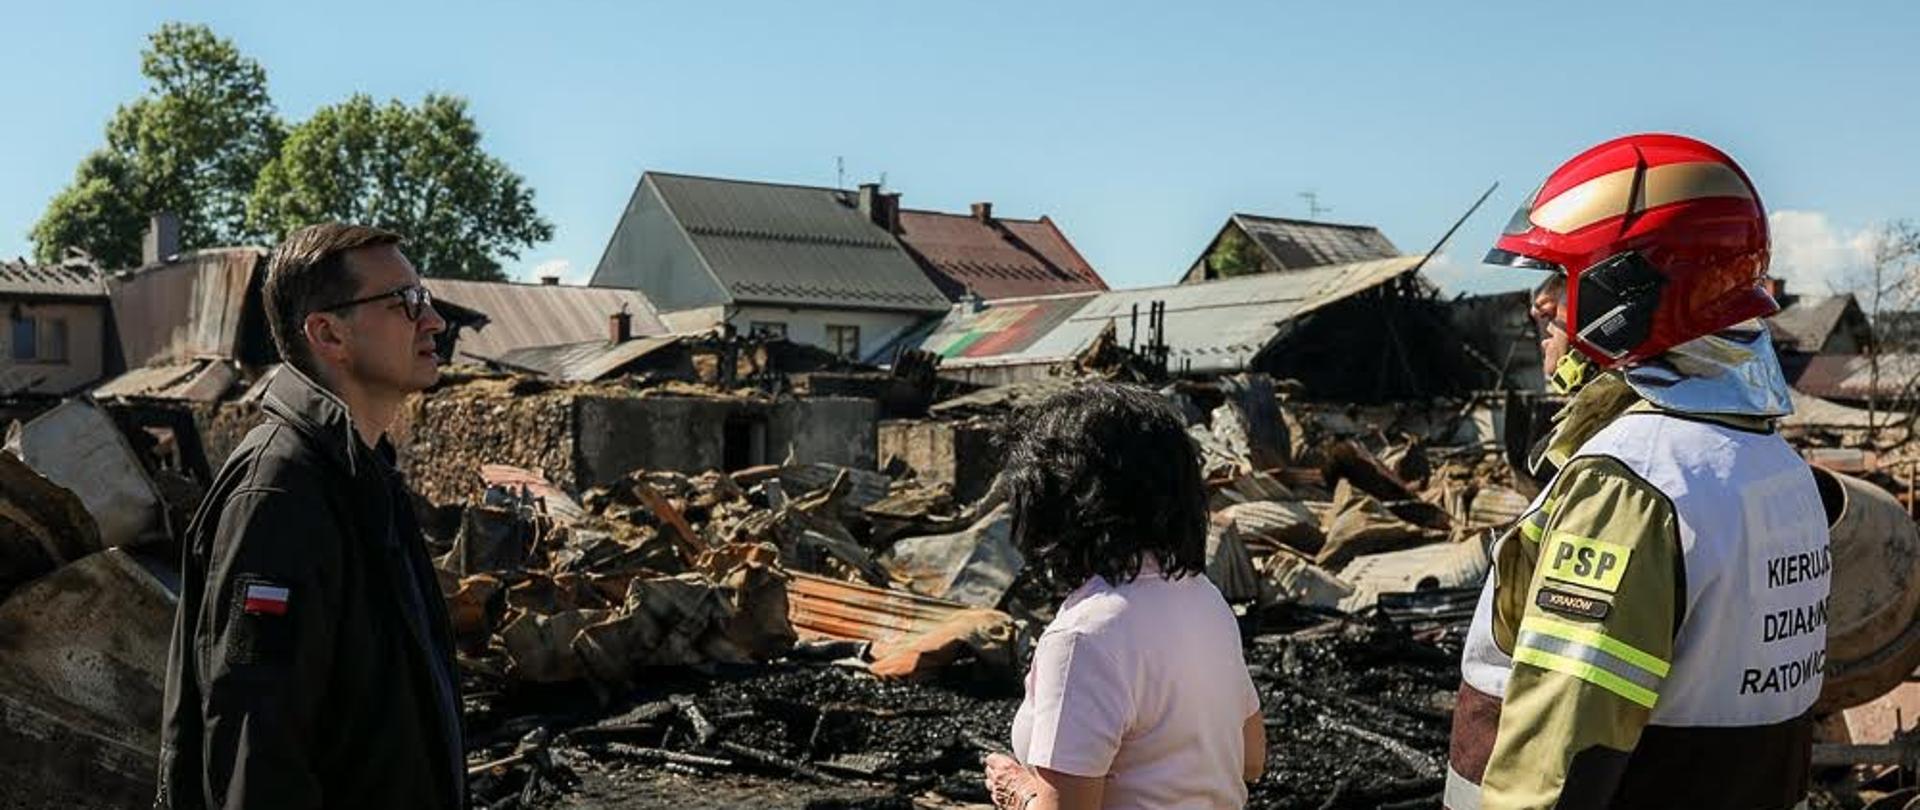 Premier Mateusz Morawiecki patrzy się na zniszczone przez pożar budynki.